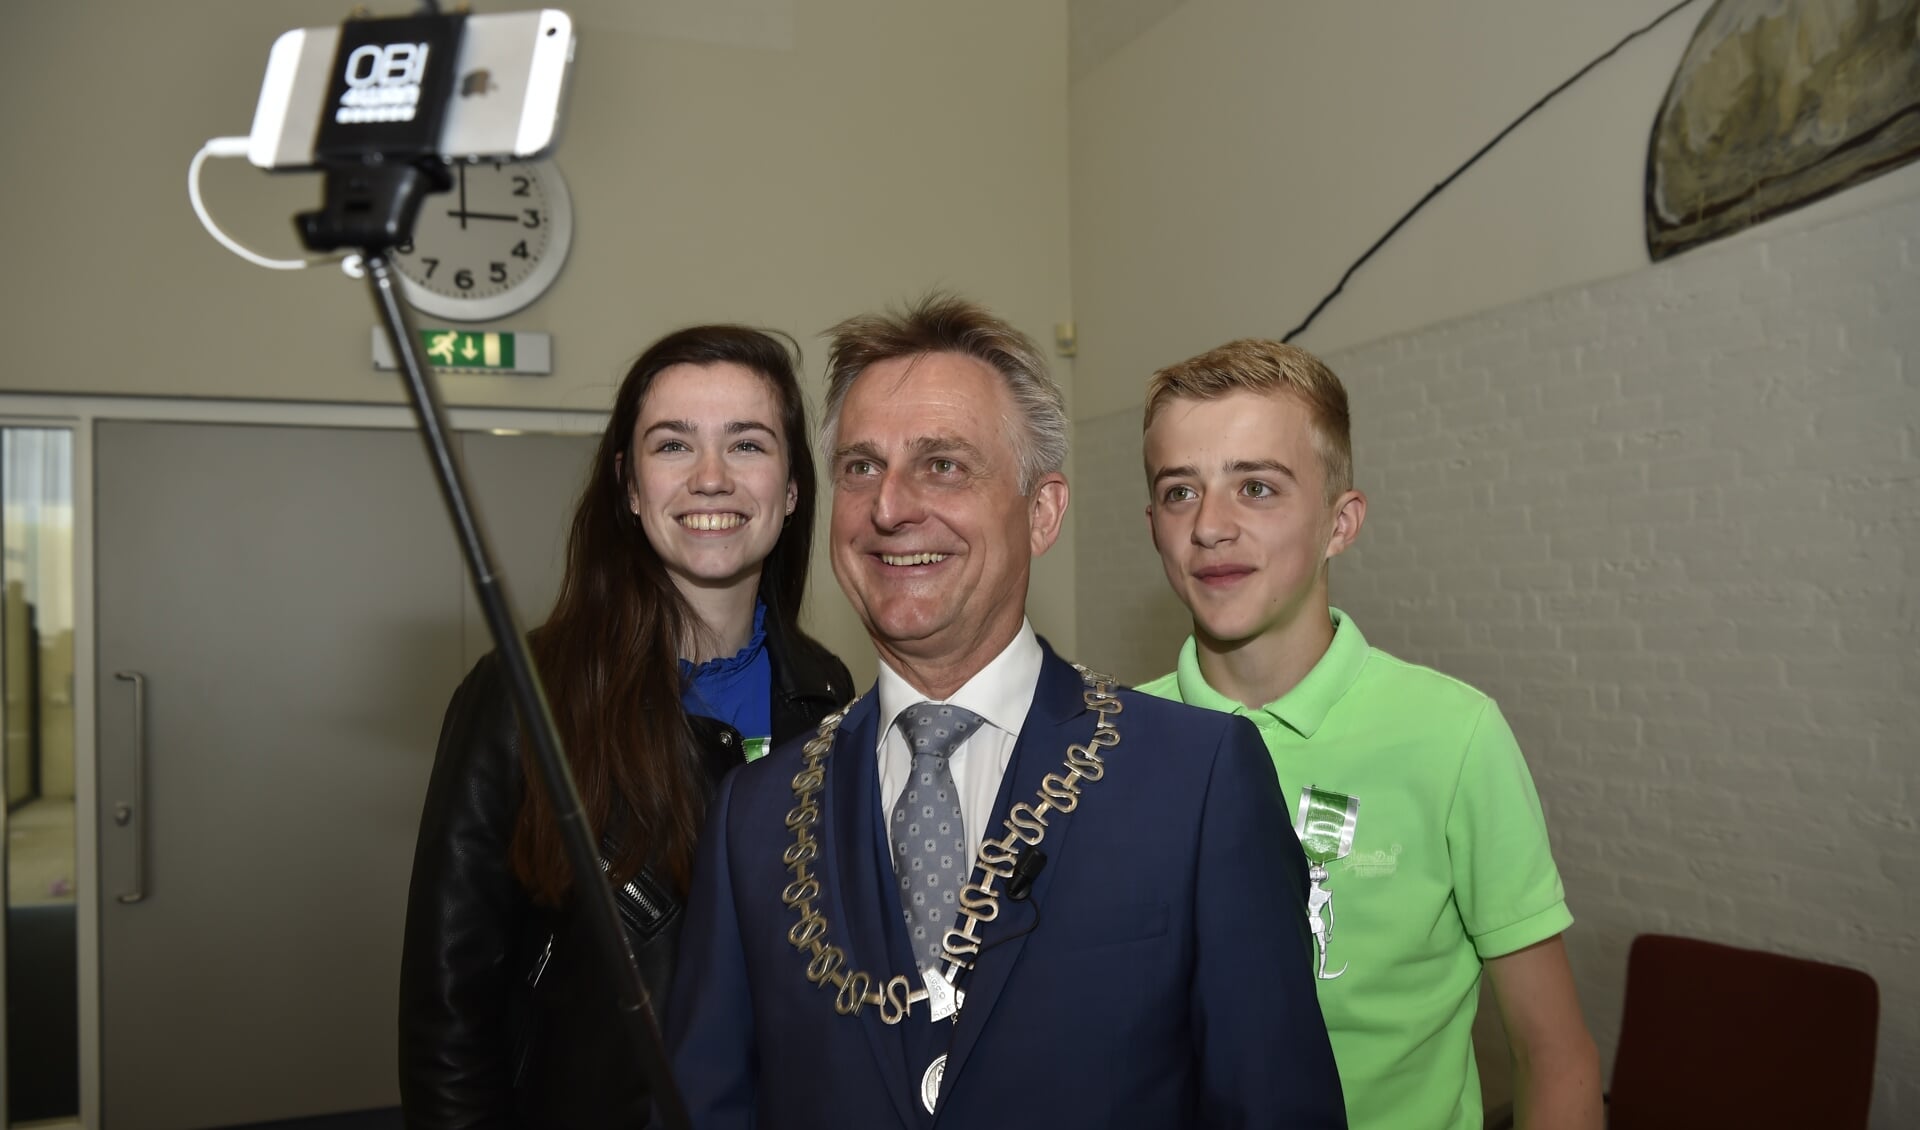 En natuurlijk nog even een selfie met de burgemeester.